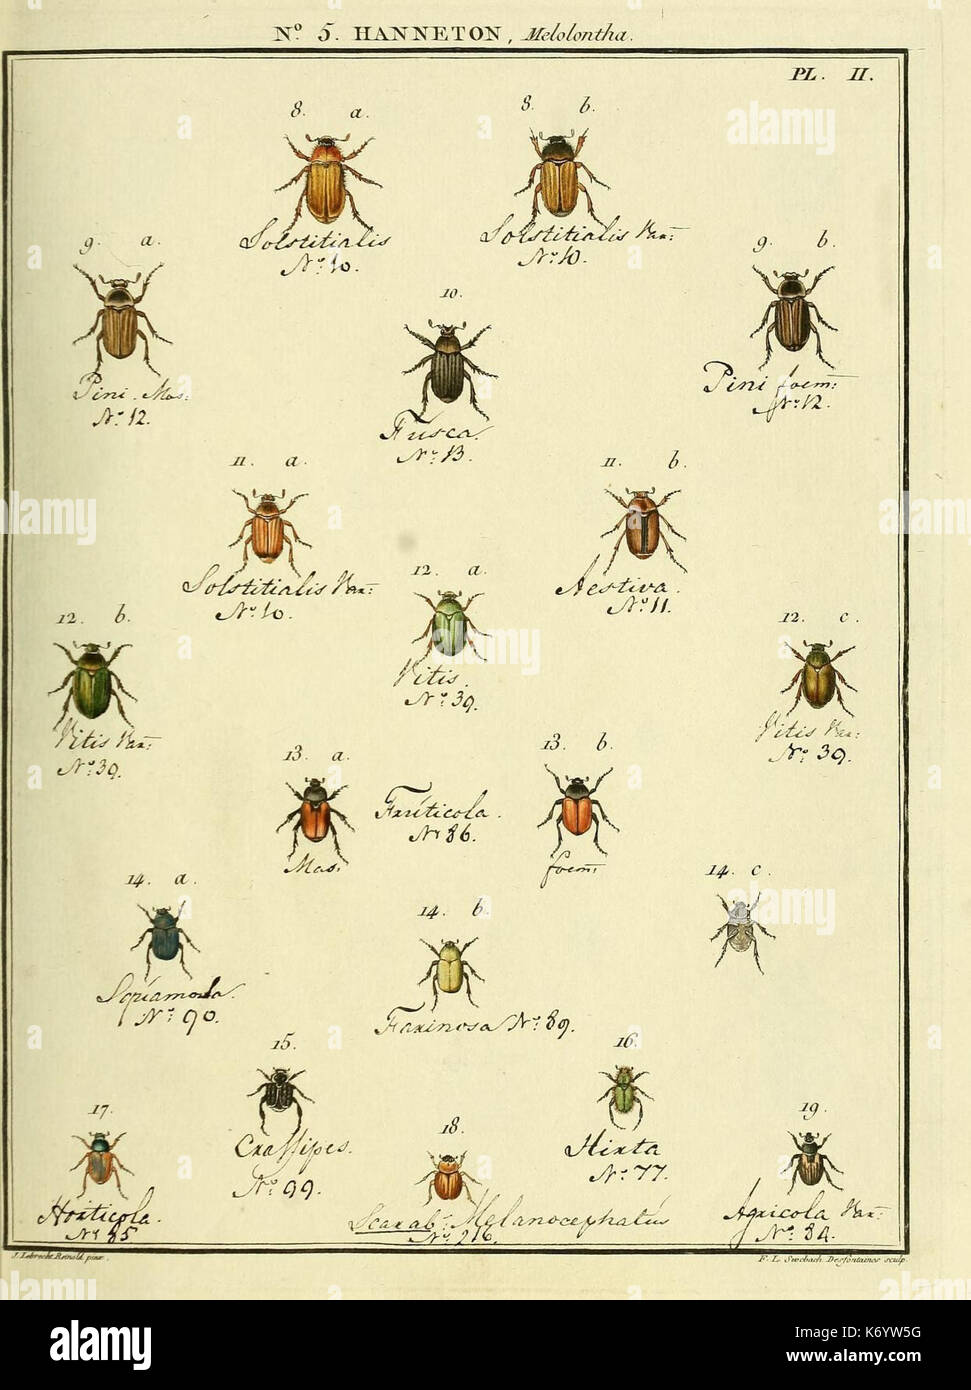 Entomologie, ou, Histoire naturelle des insectes (No. 5 Hanneton Pl. II) (8112655625) Stock Photo